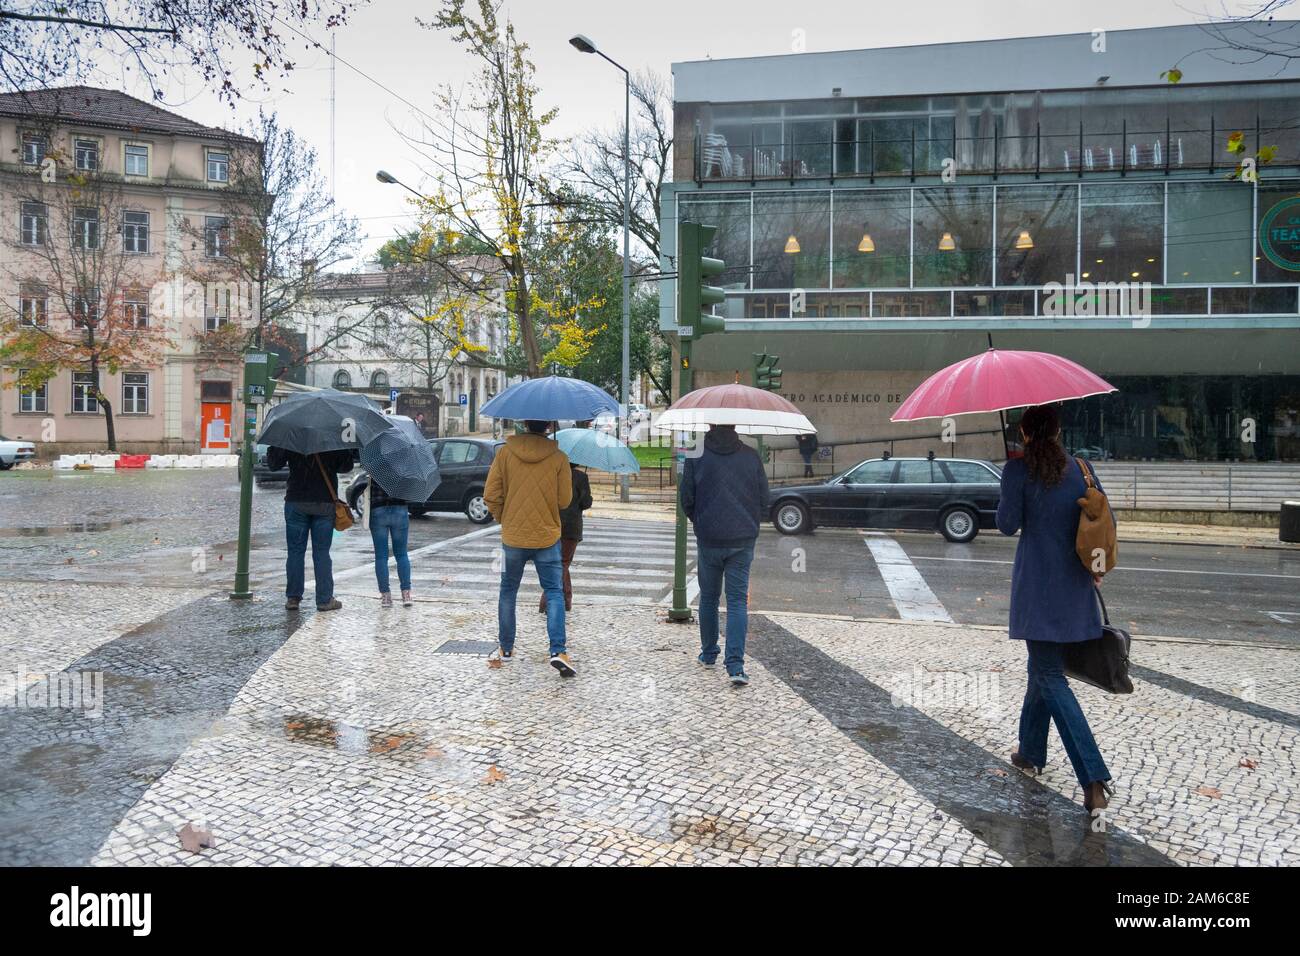 COIMBRA, PORTUGAL - 04. Januar 2016 - Menschen versuchen und halten sich bei starkem Regen in der Praca da Republica im Zentrum von Coimbra Portugal trocken Stockfoto